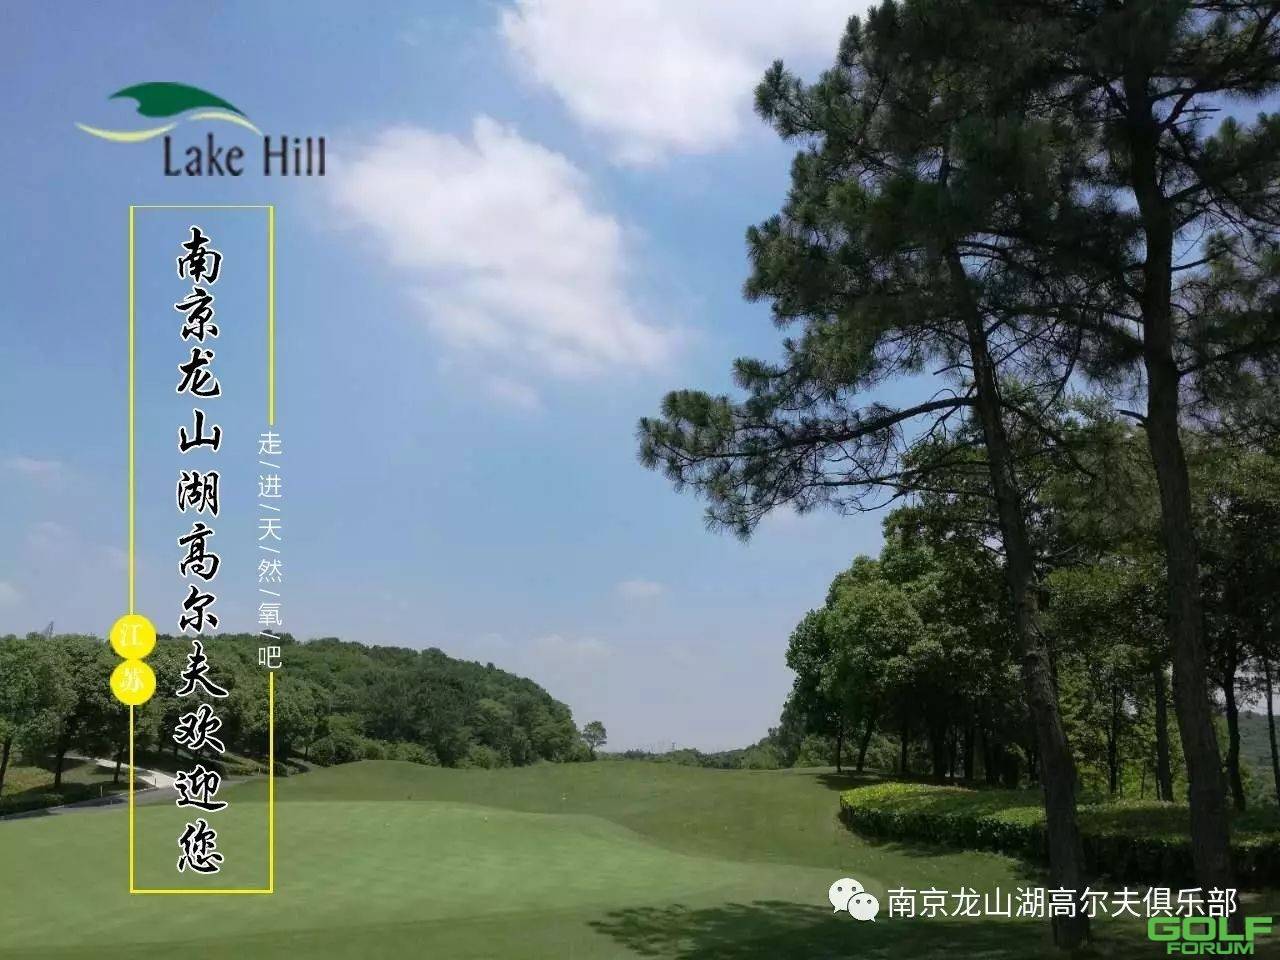 【通知】南京龙山湖高尔夫度假村封场两天